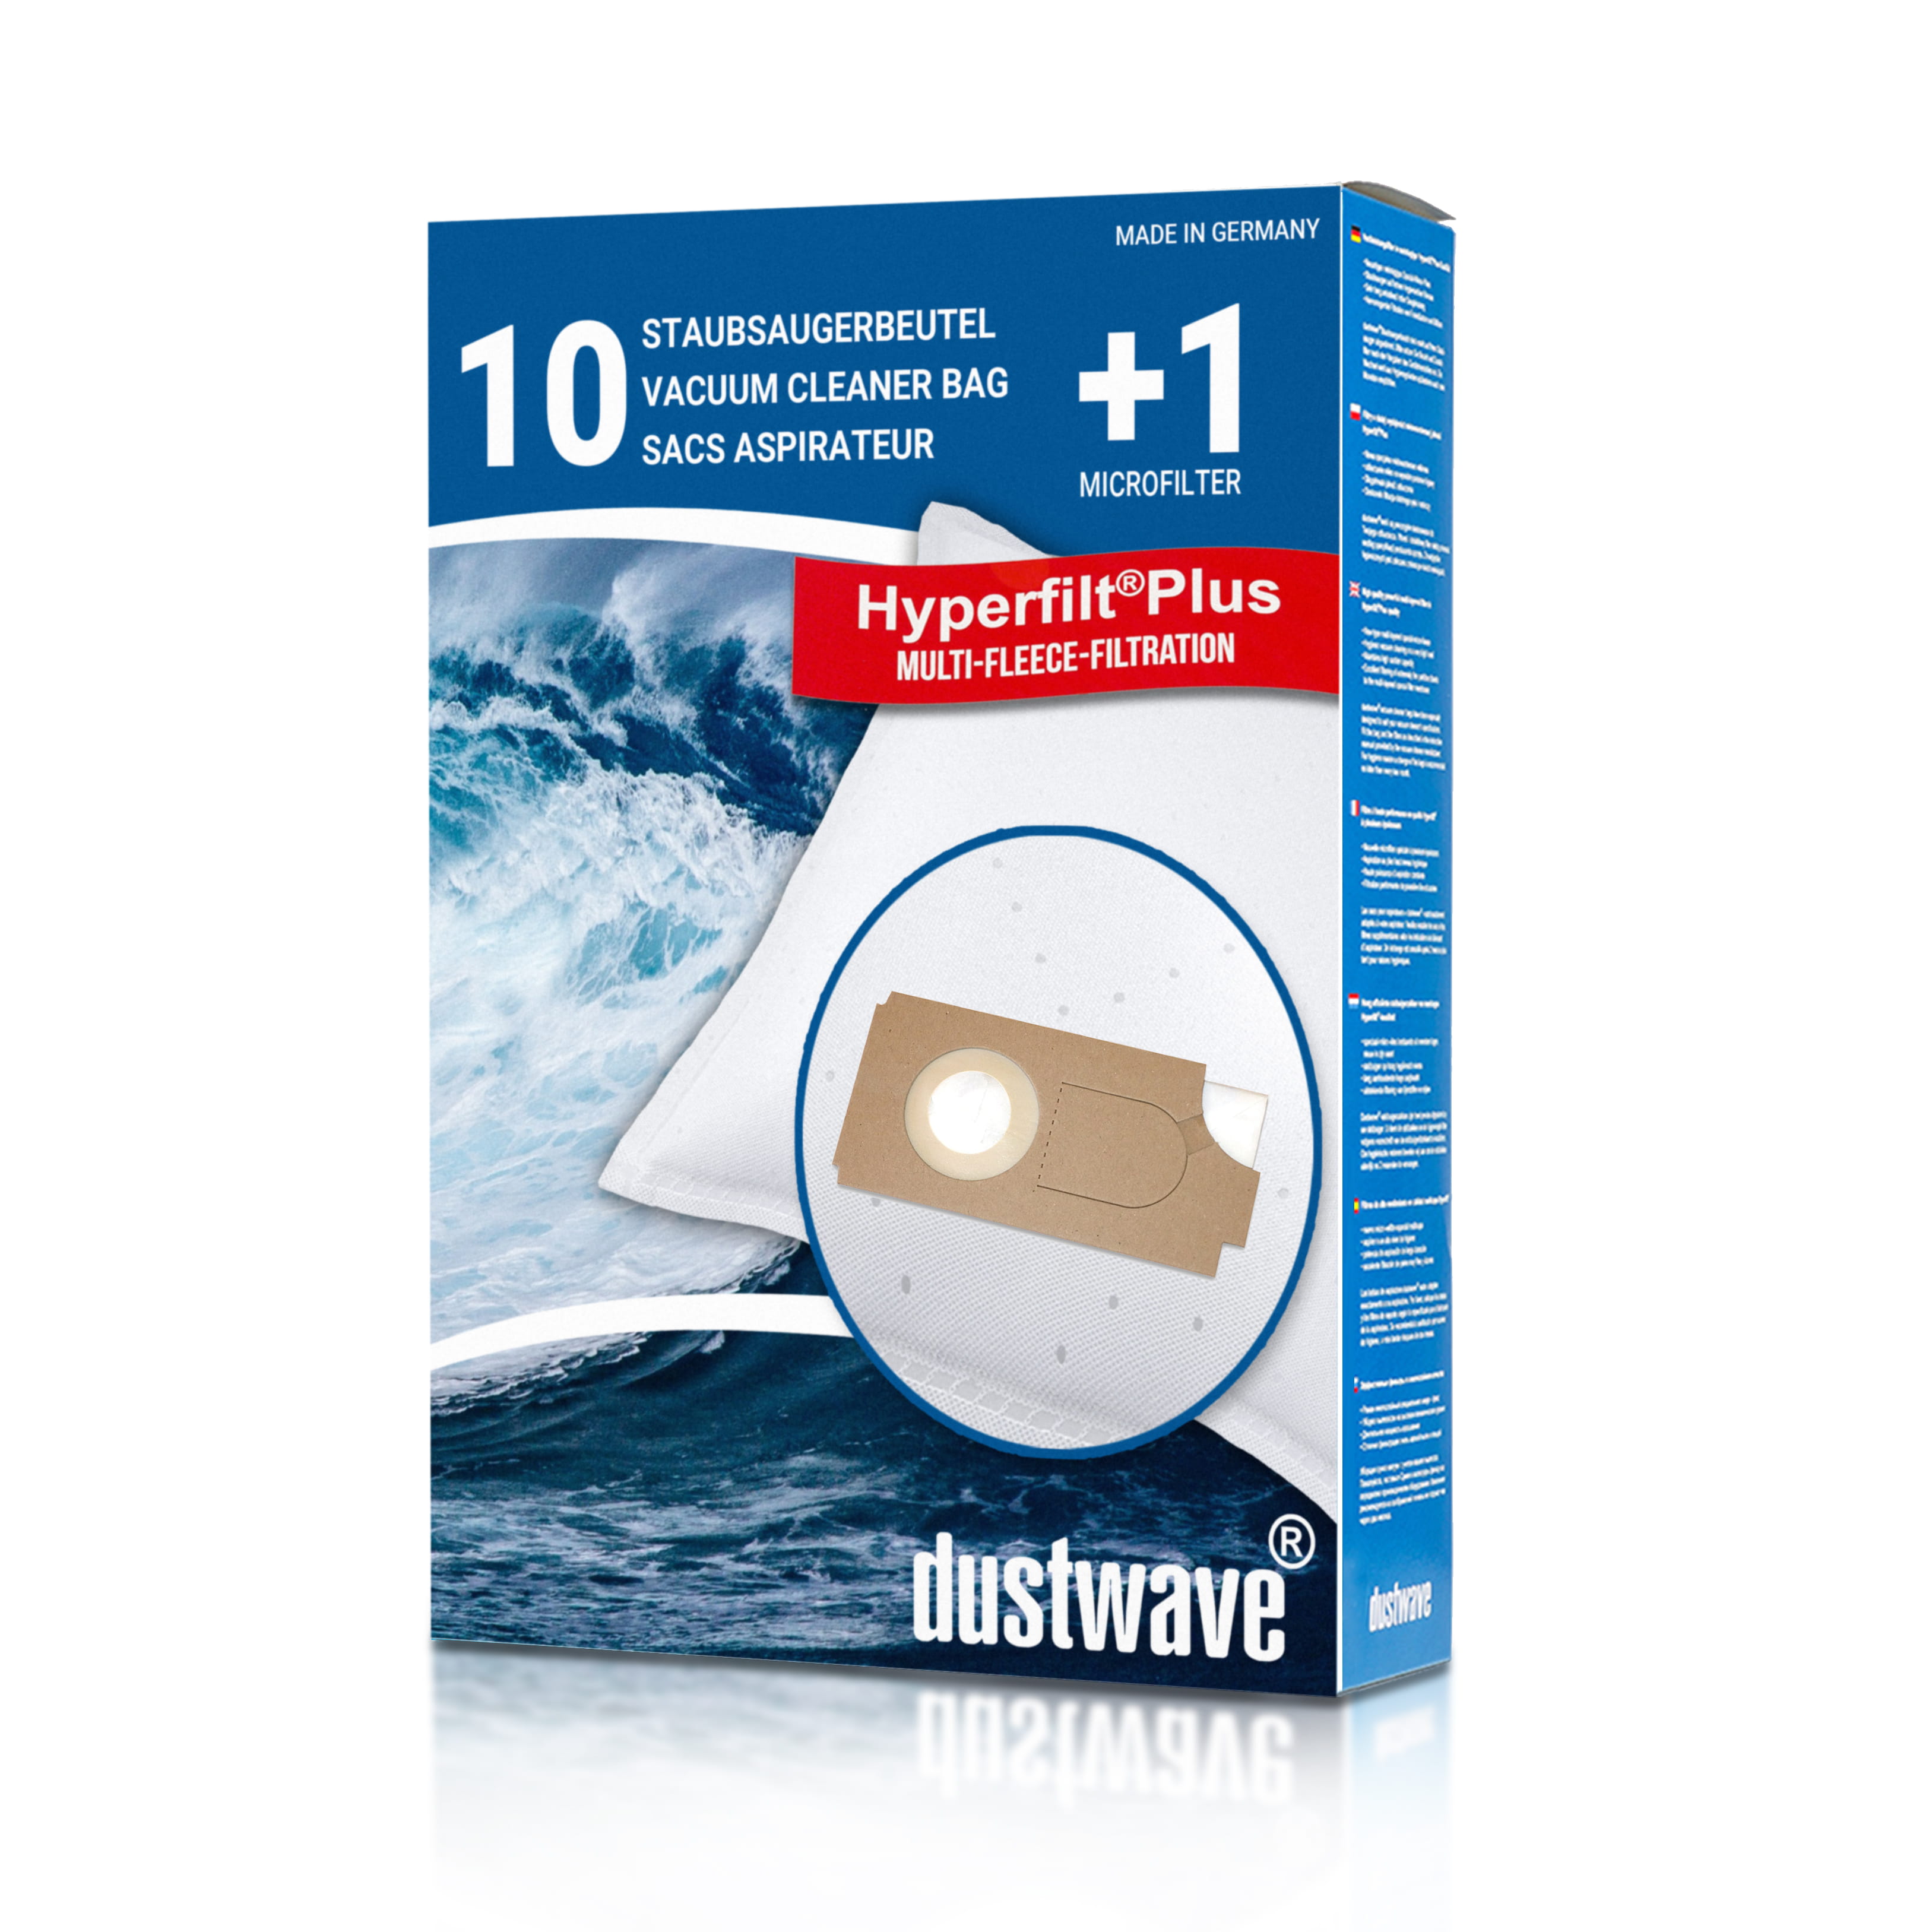 Dustwave® 10 Staubsaugerbeutel für Columbus BS 360 » 460 - hocheffizient mit Hygieneverschluss - Made in Germany